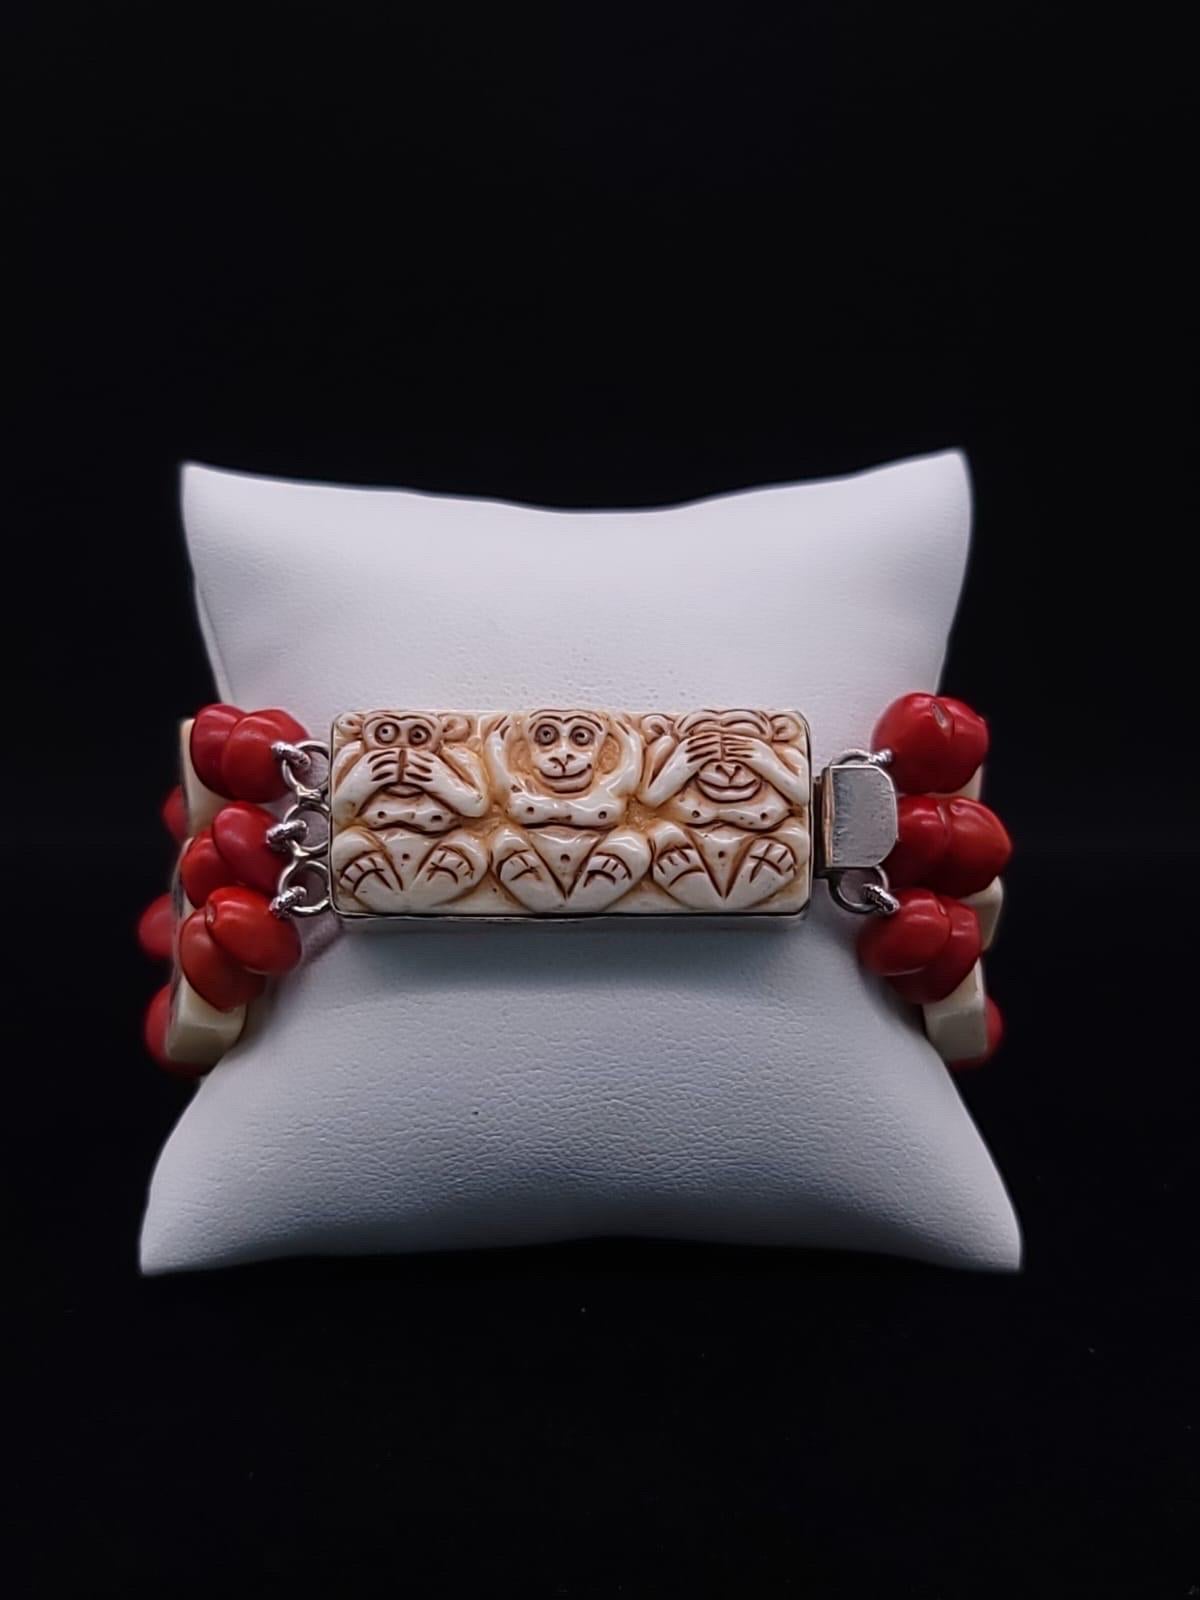 A.Jeschel Stunning mahjong tiles bracelet. 12